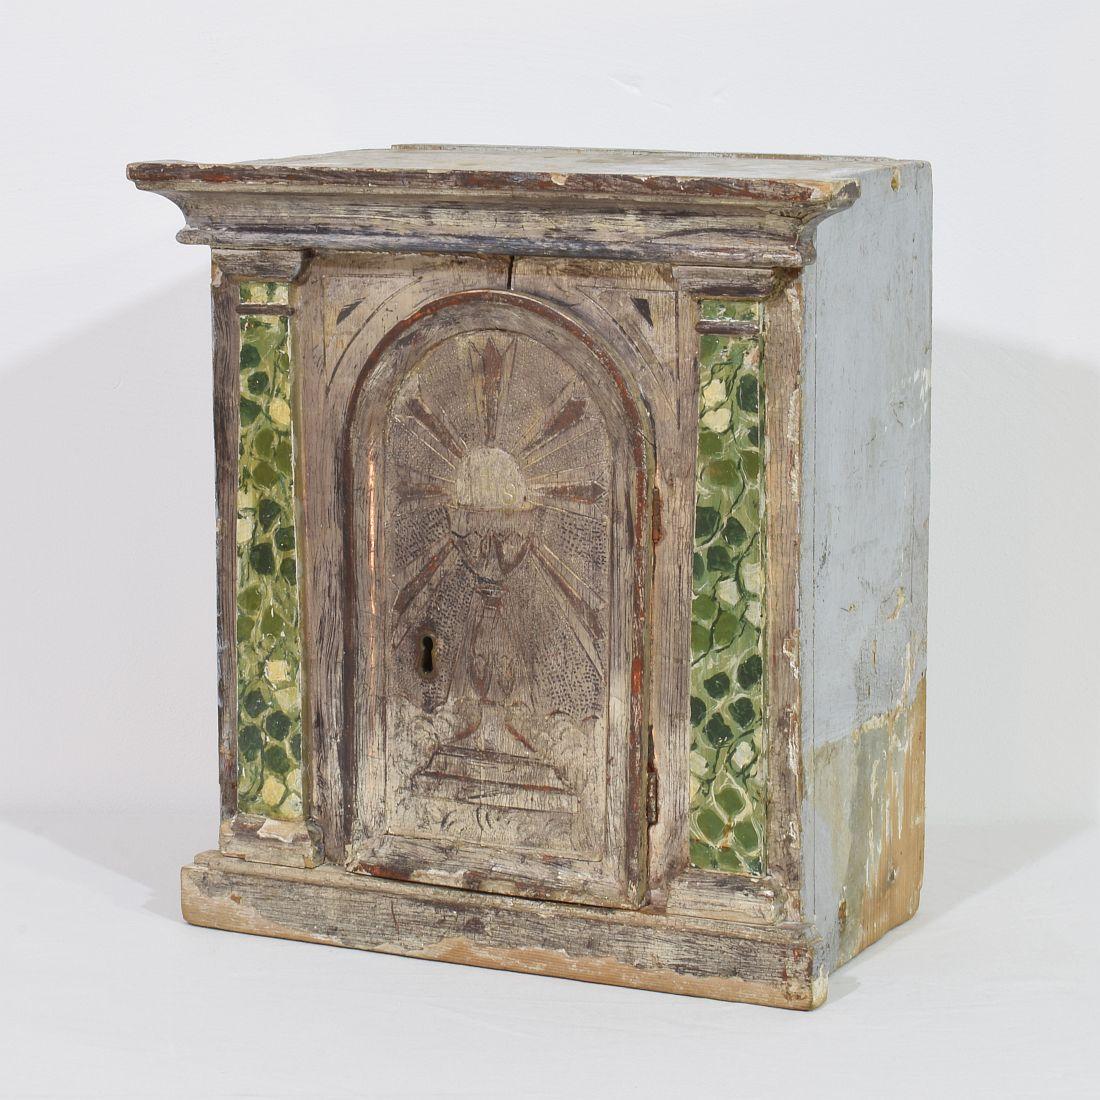 Merveilleux petit tabernacle qui ornait autrefois l'autel d'une église. Magnifique peinture d'origine à la feuille d'argent et au faux marbre.
altéré, petites pertes. Italie vers 1780
 